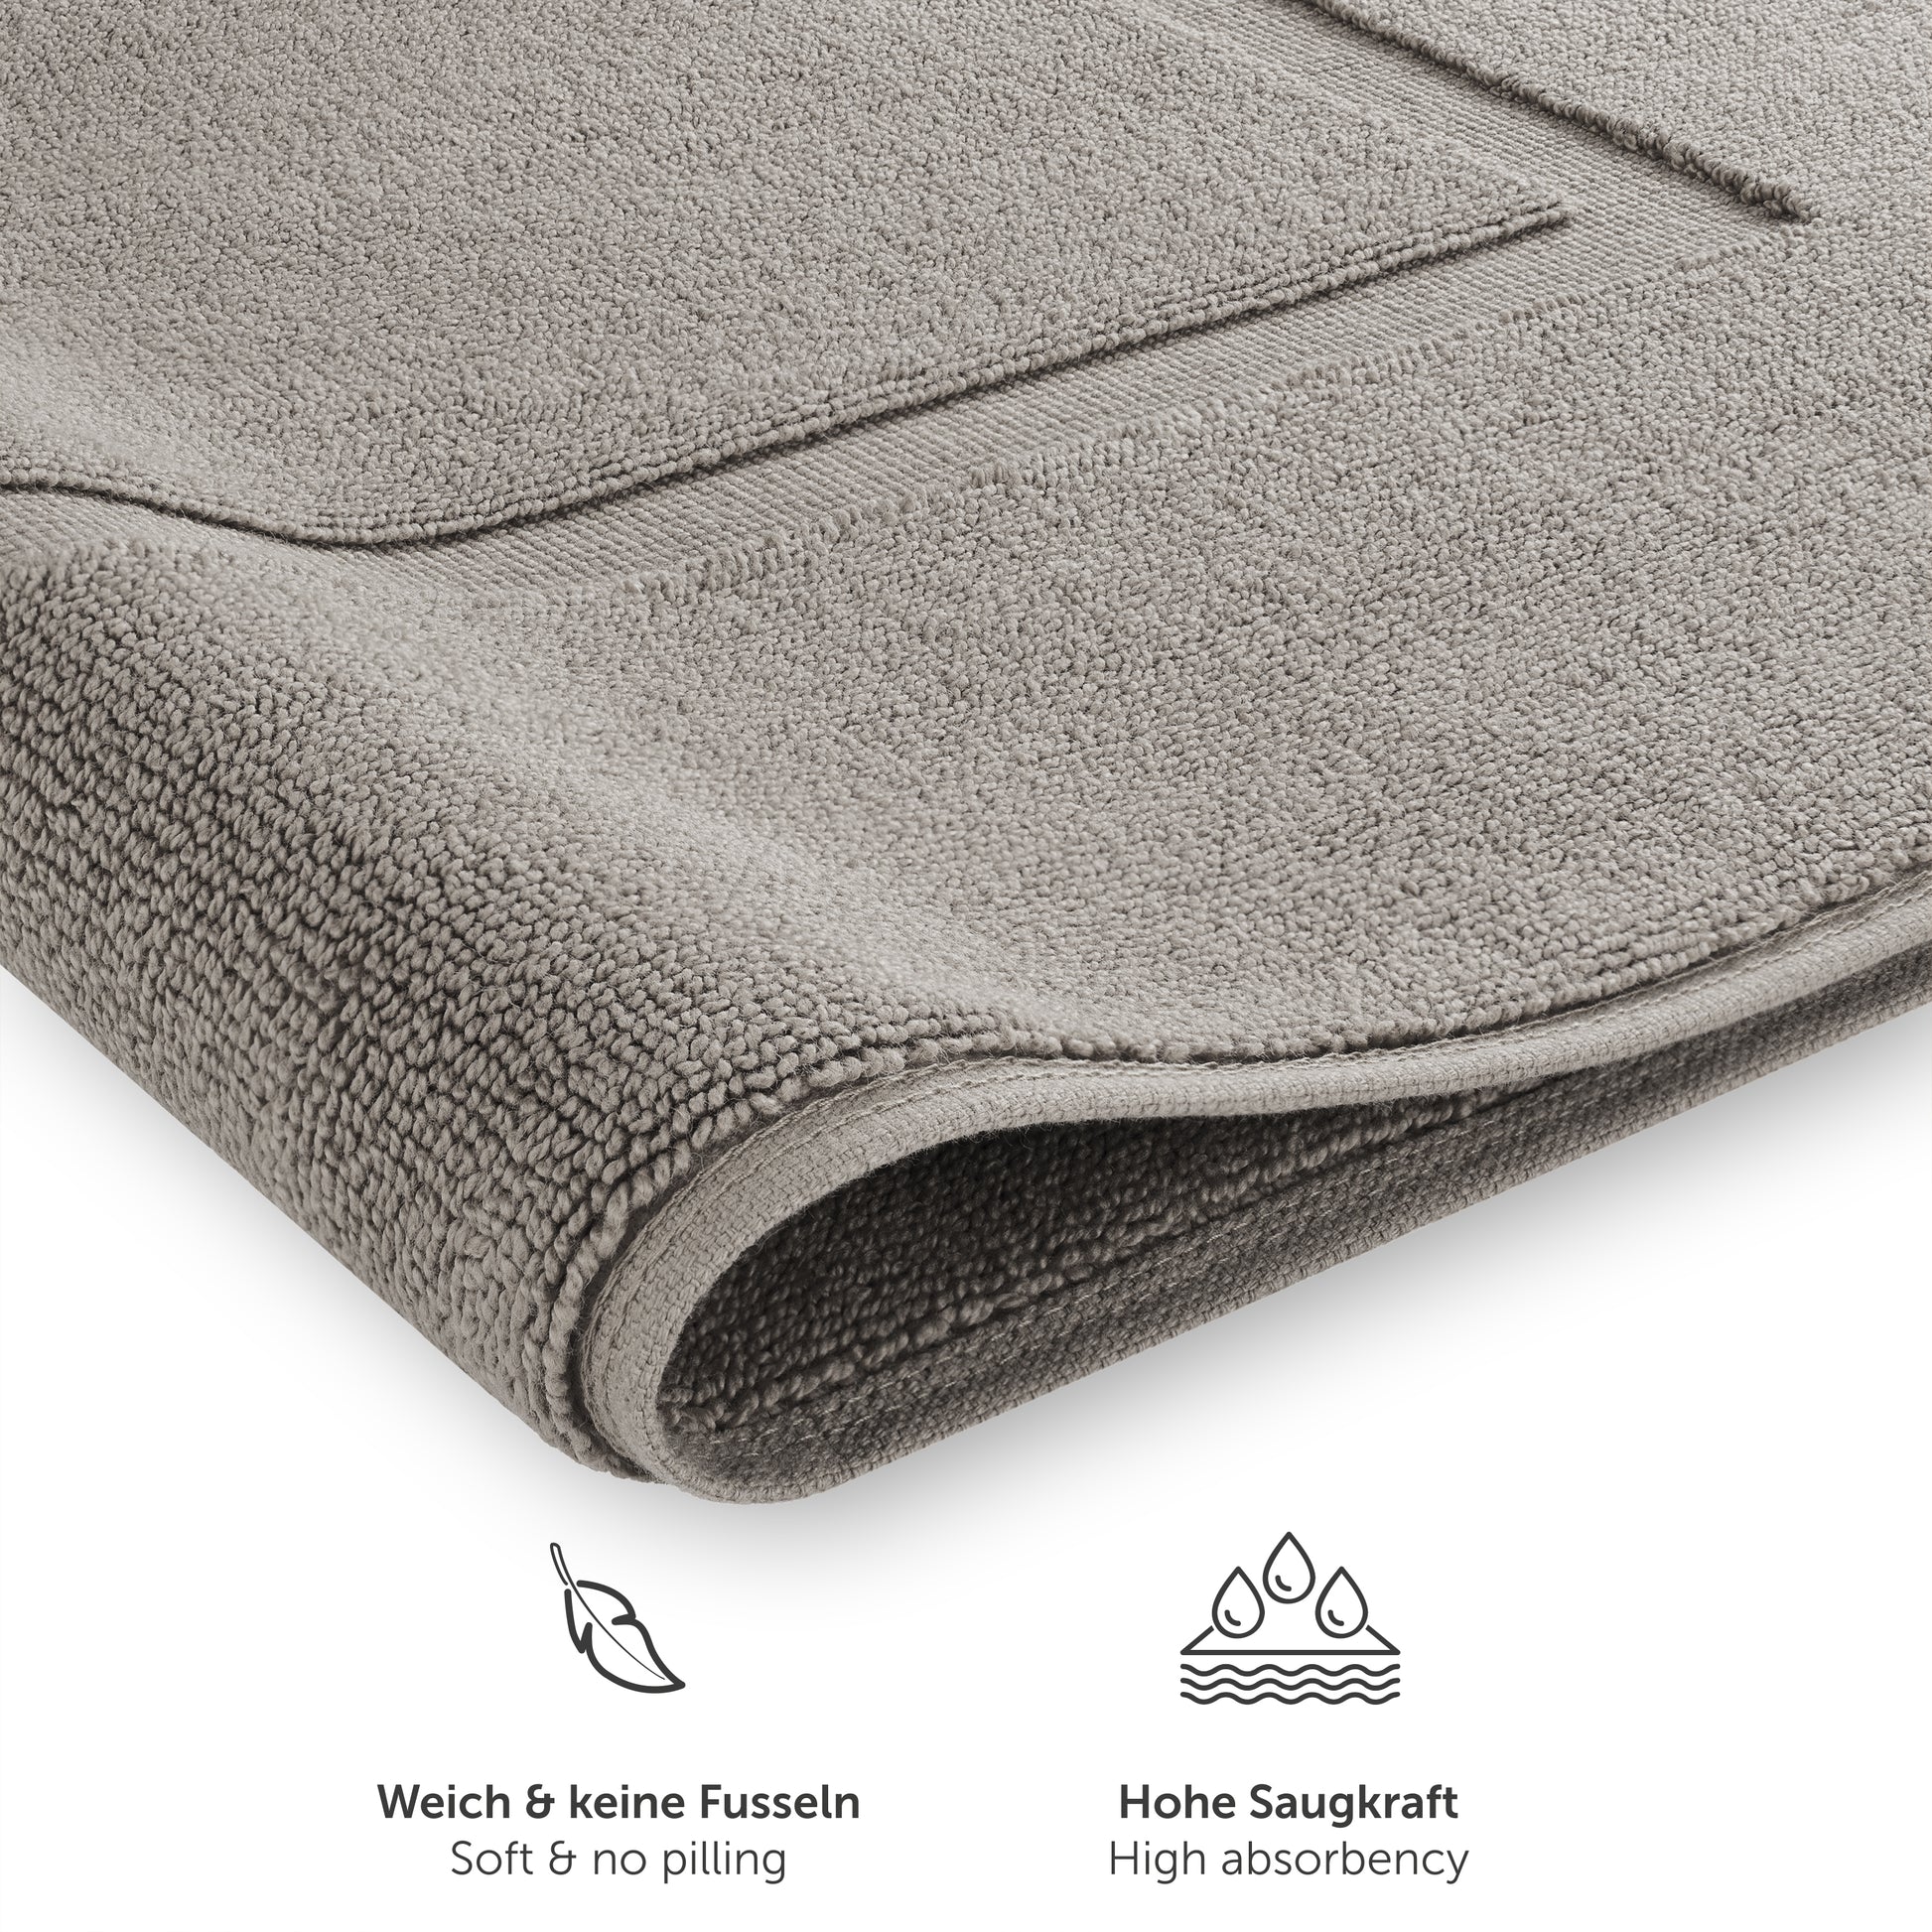 Detailansicht von grau Handtuch mit Text zu Weichheit und Saugfähigkeit.